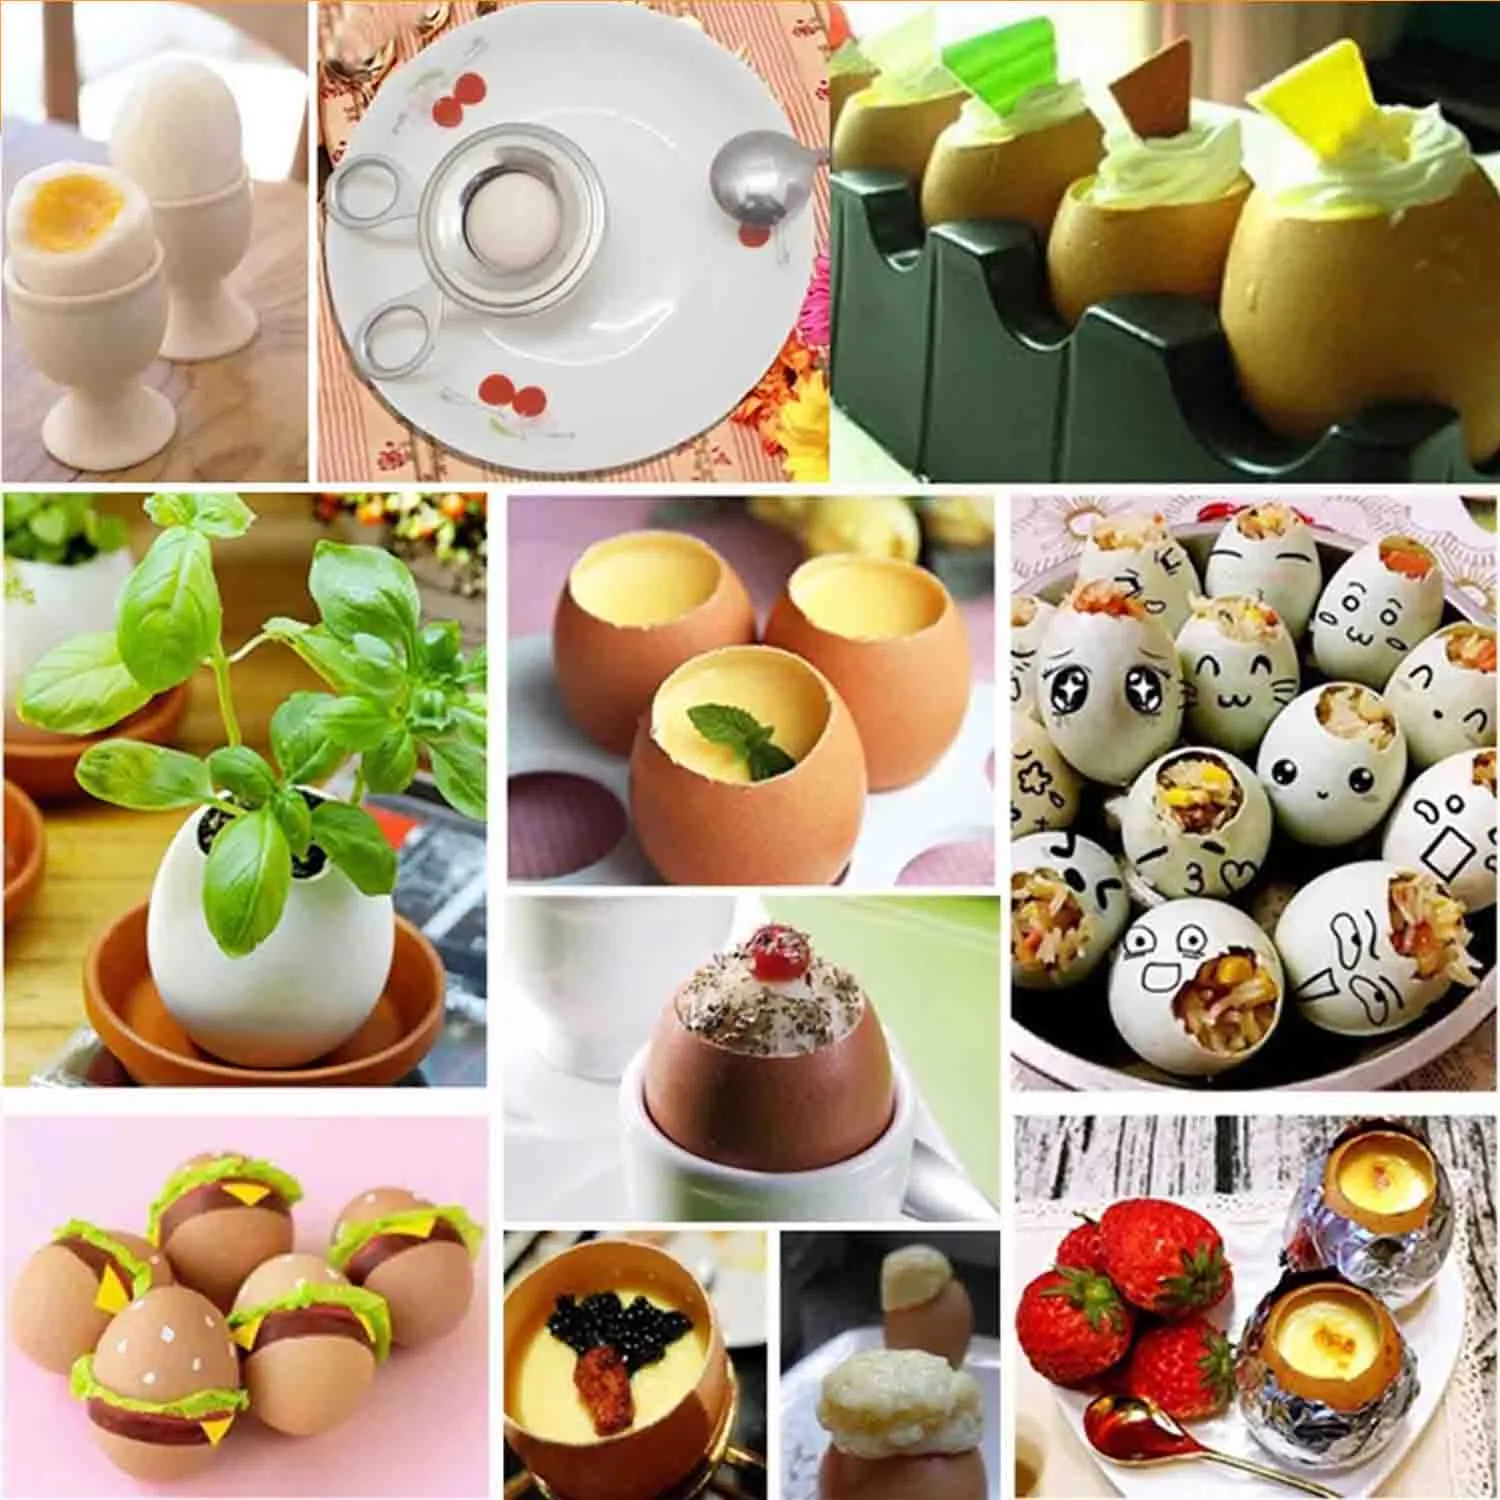 Herramienta Multifinonal Para Batir Huevos, Utensilio para Abri Huevos, Tijeras, Rebanada de Acero inoxydable, séparador de Huevos, Accesorios de Cocina